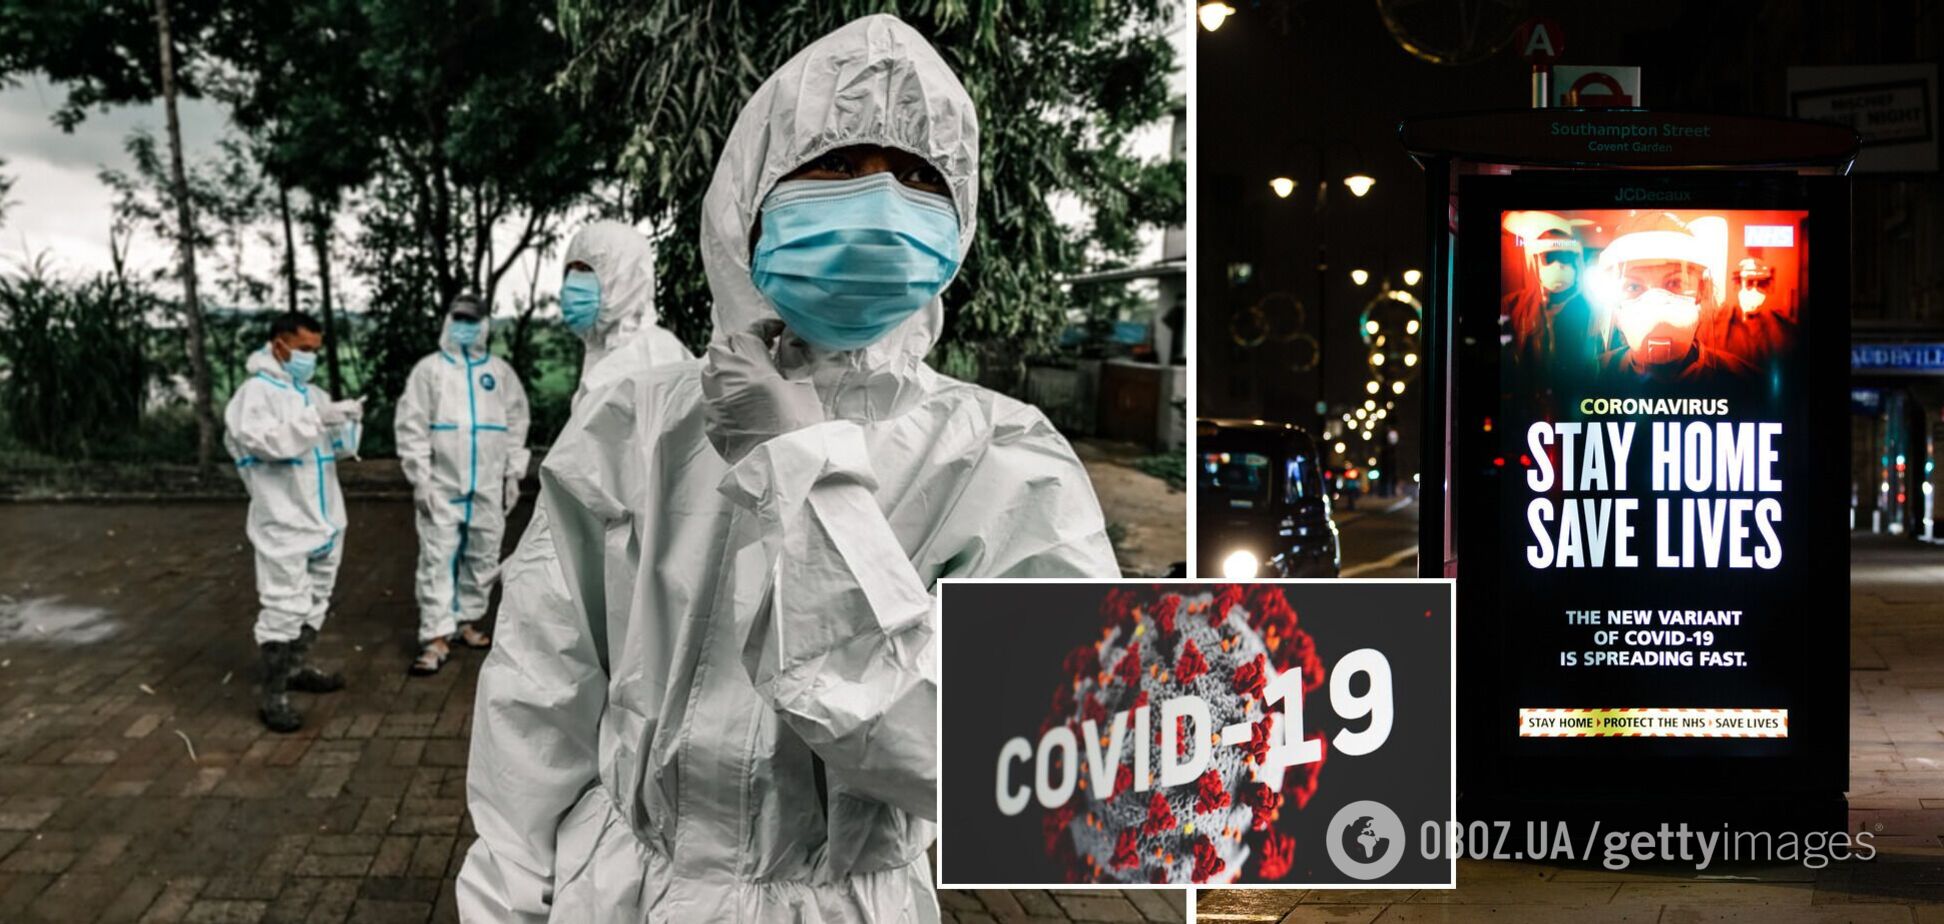 Локдаун для нещеплених у Німеччині та нові ліки від COVID-19. Хроніка коронавірусу на 2 грудня